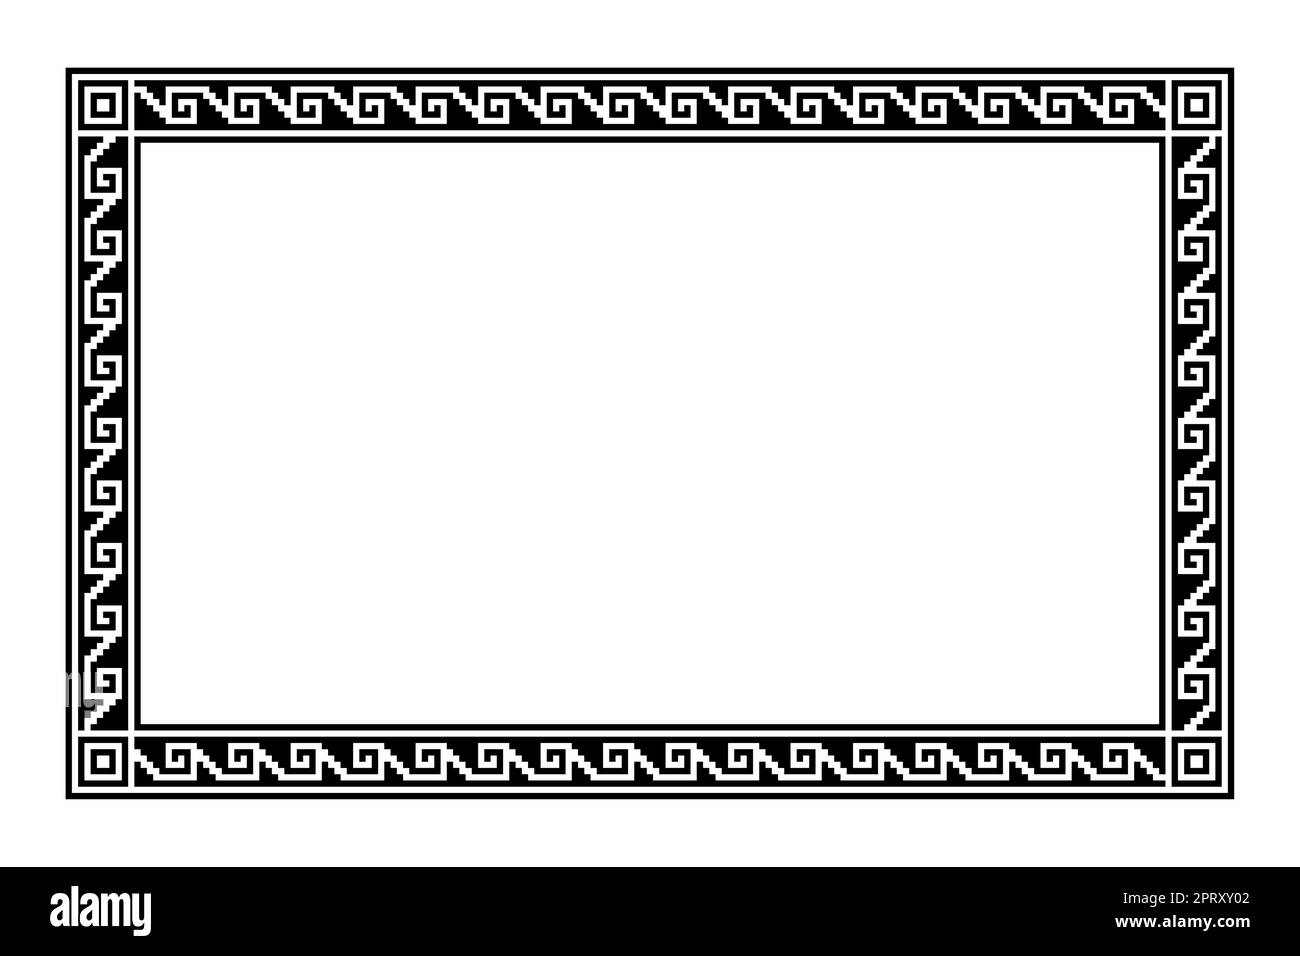 Motif zaztèque à gradins, cadre rectangulaire avec motif méandre Illustration de Vecteur